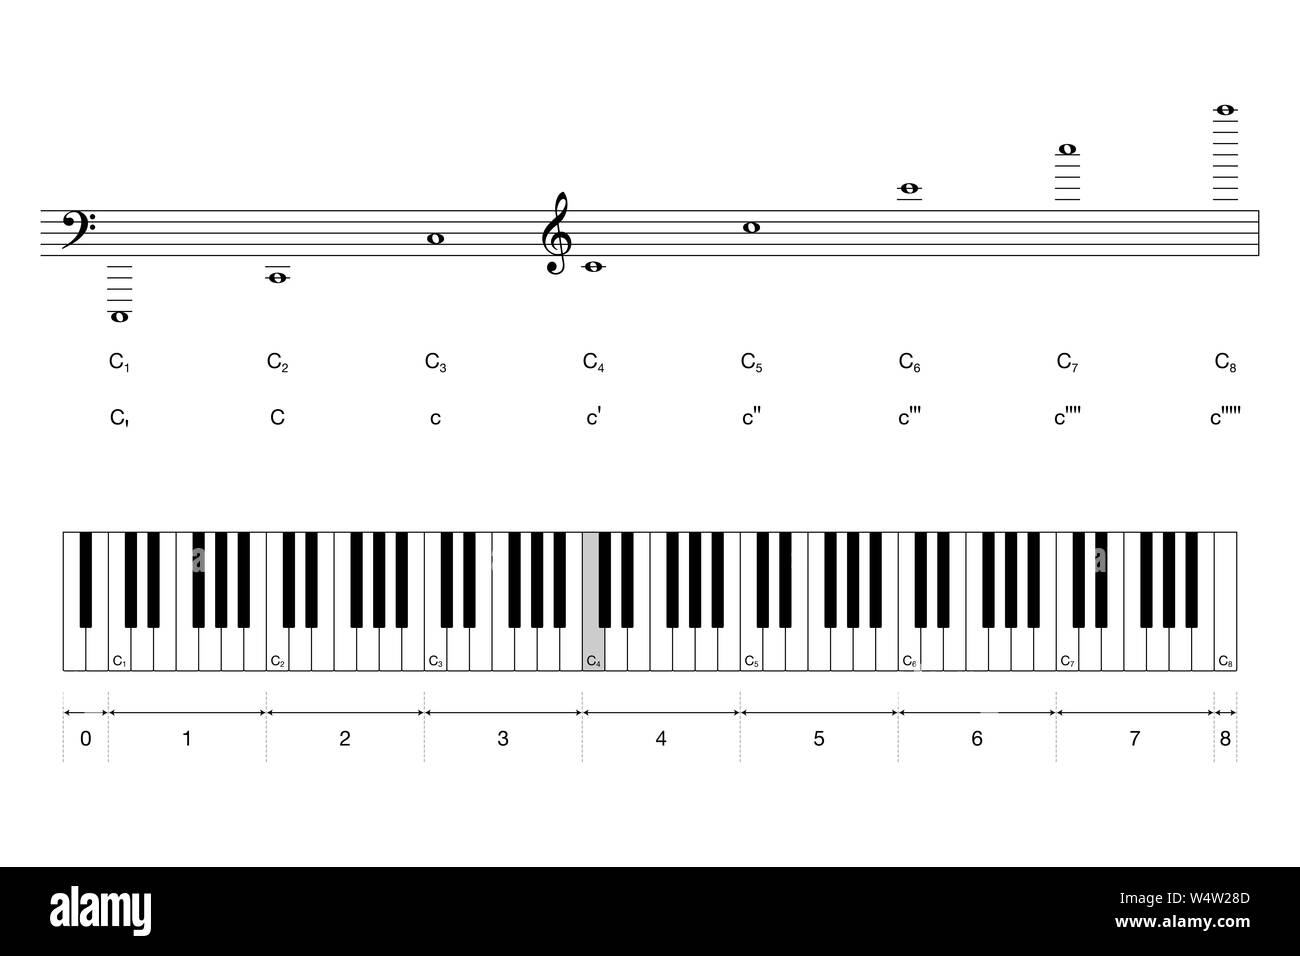 Oktaven eines Flügels Tastatur mit wissenschaftlichen und Helmholtz pitch Notation. Das mittlere C ist in der Farbe grau gefärbt. 88 Tasten und sieben volle Oktaven. Stockfoto